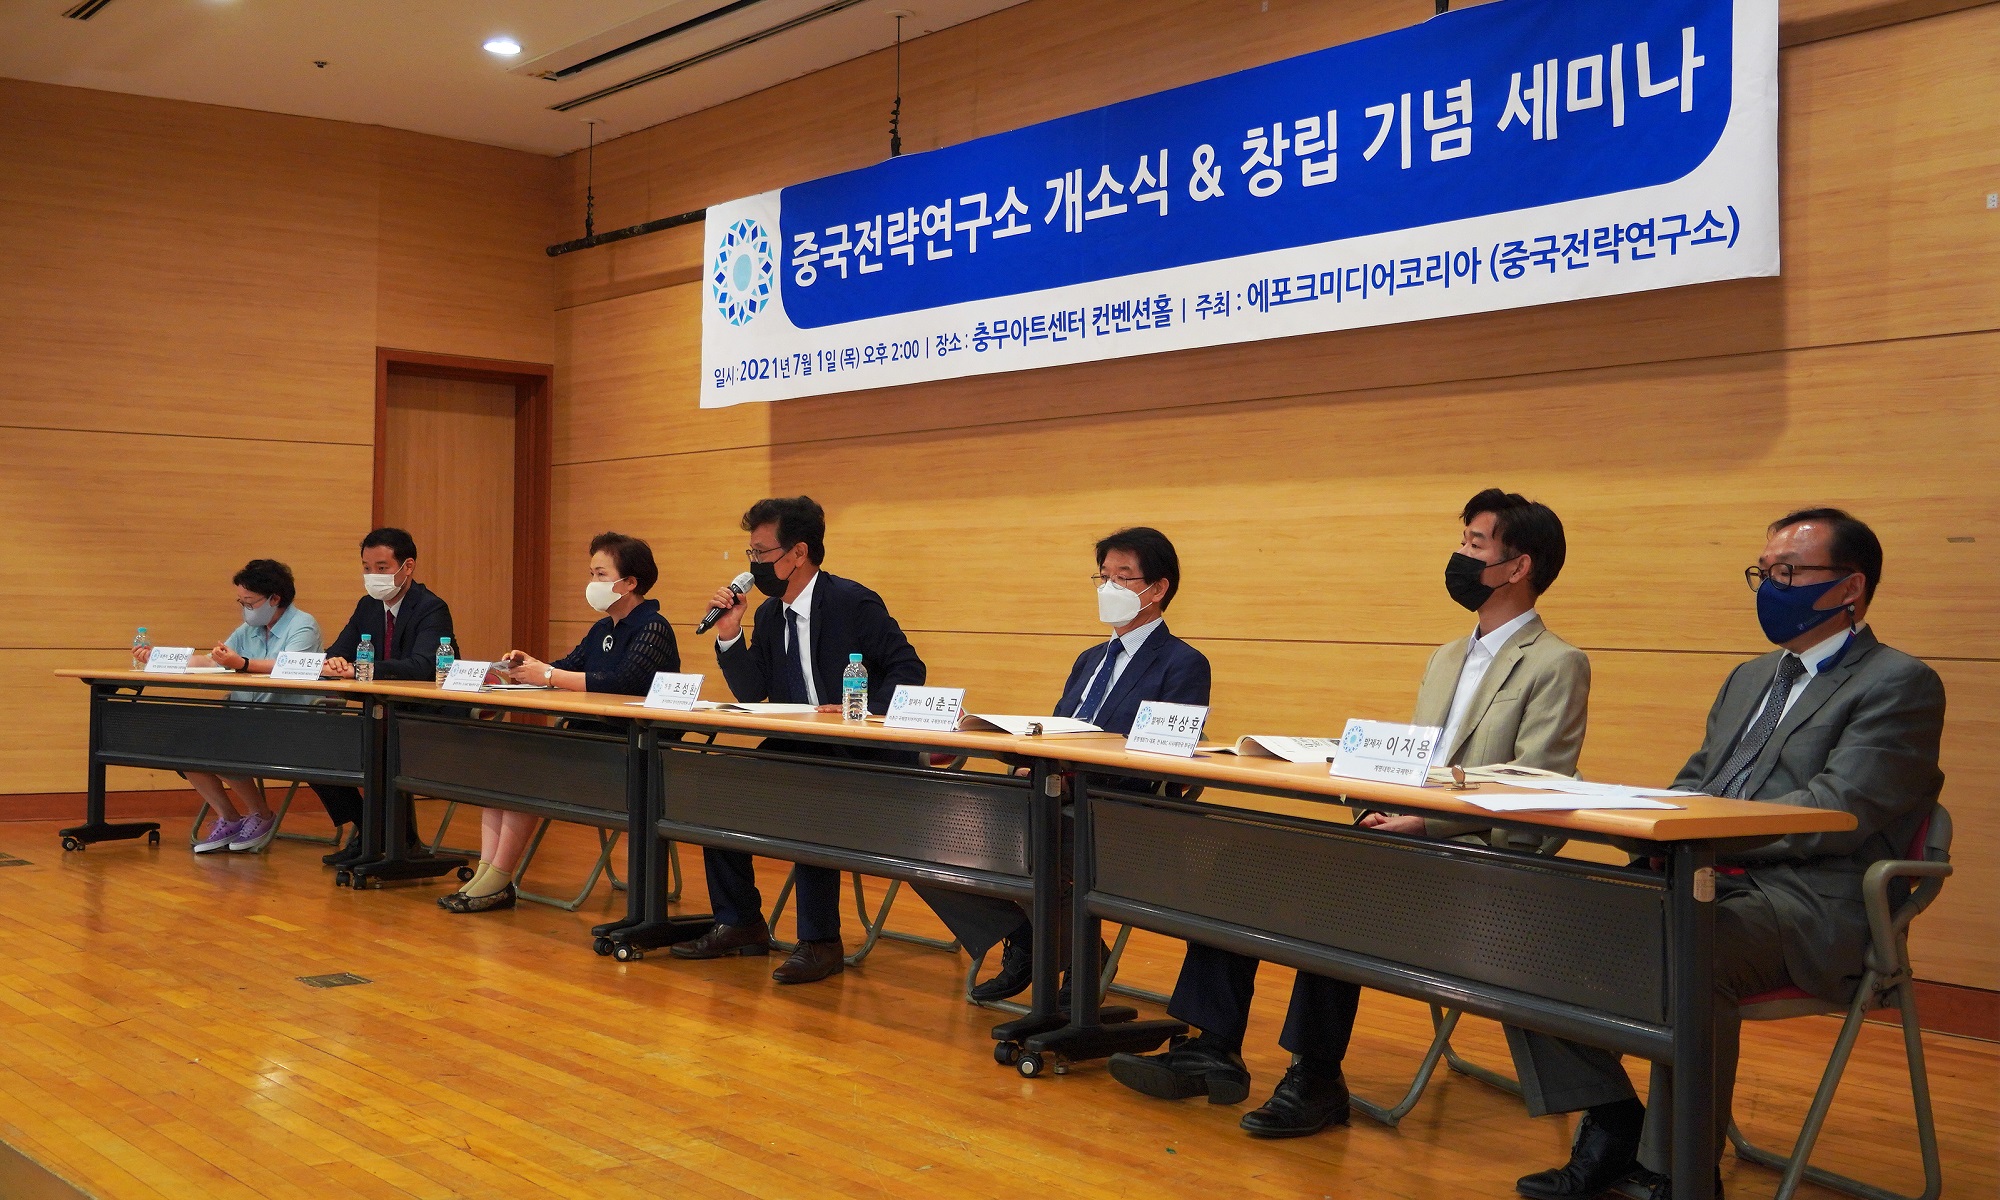 中國研究所成立 韓專家討論中共滲透下韓國未來 | 九評共產黨 | 大紀元